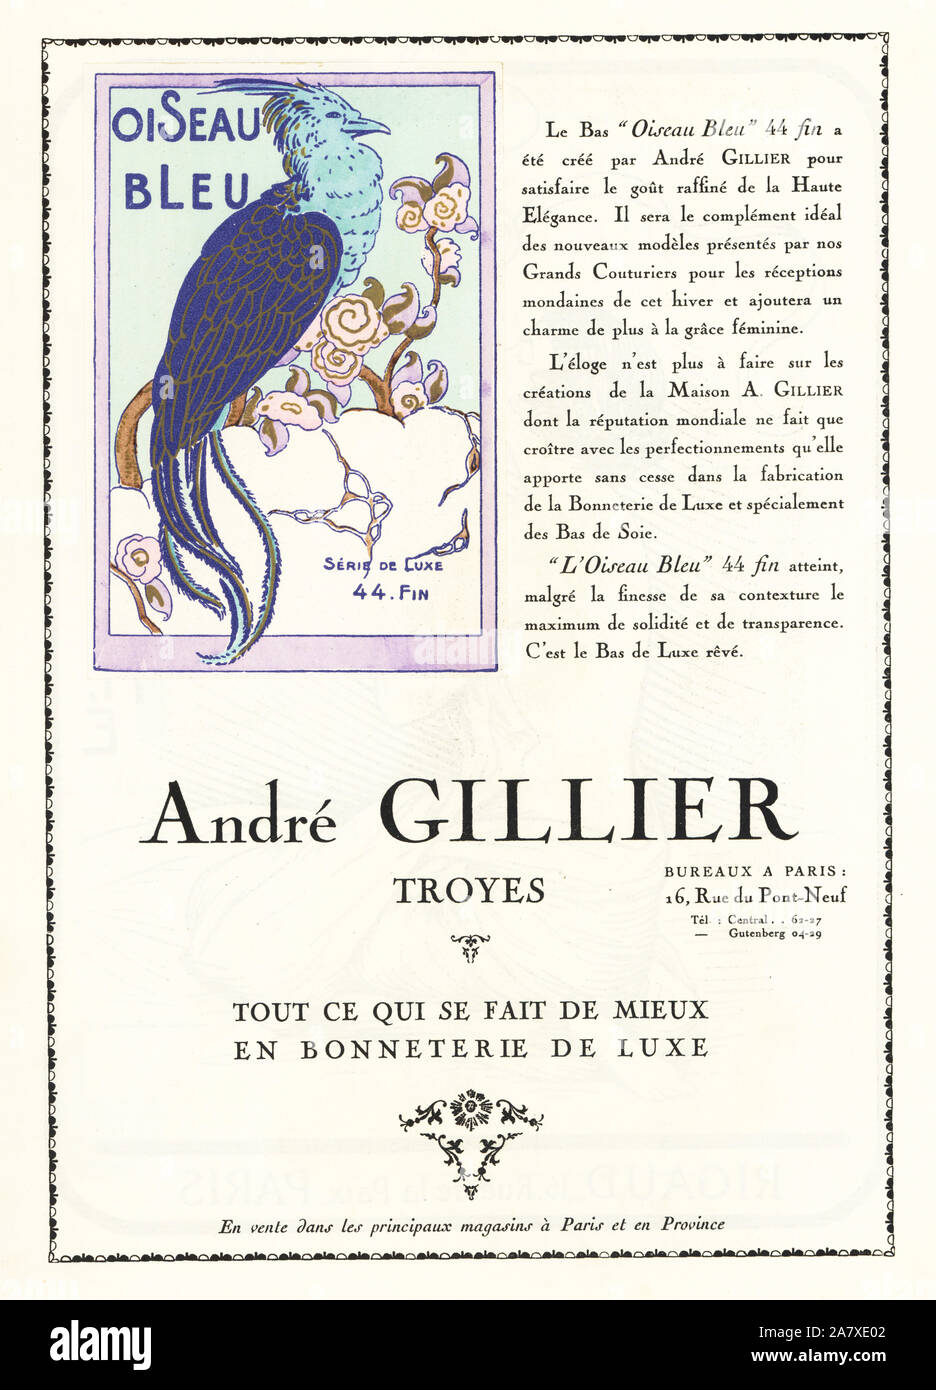 Pubblicità per OISEAU BLEU marca di calze di seta. Pochoir Handcolored (stencil) litografia dal lusso francese rivista di moda arte, gotta, Beaute, 1926. Foto Stock